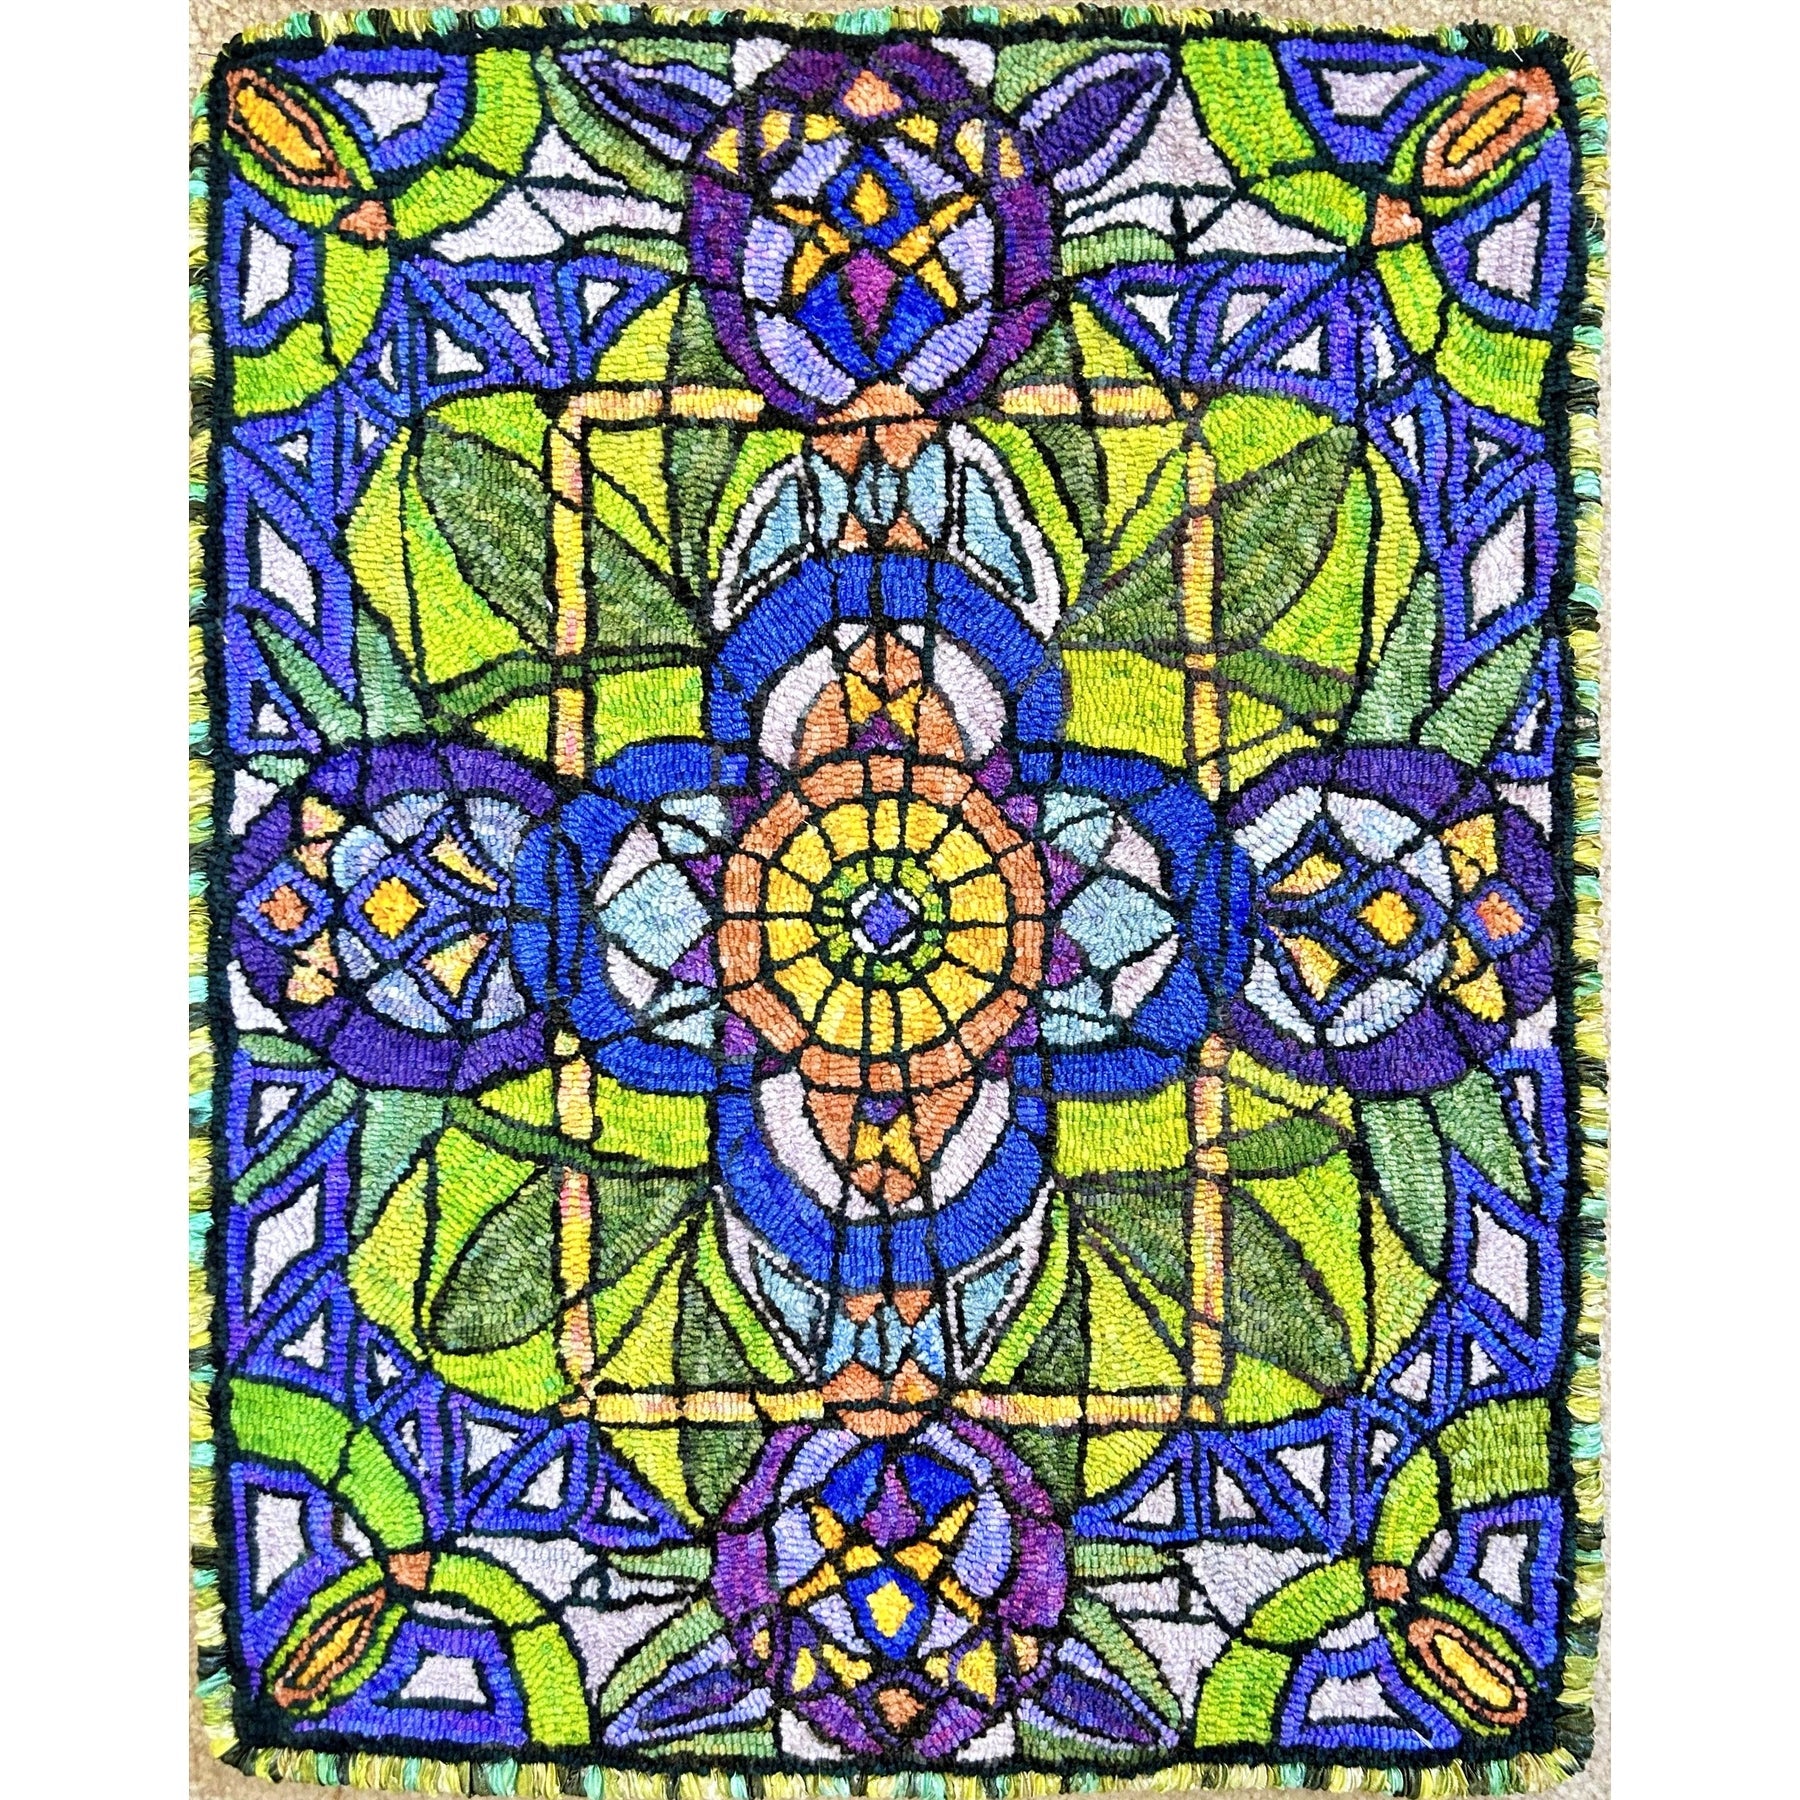 Azalea, rug hooked by Cynthia Boults